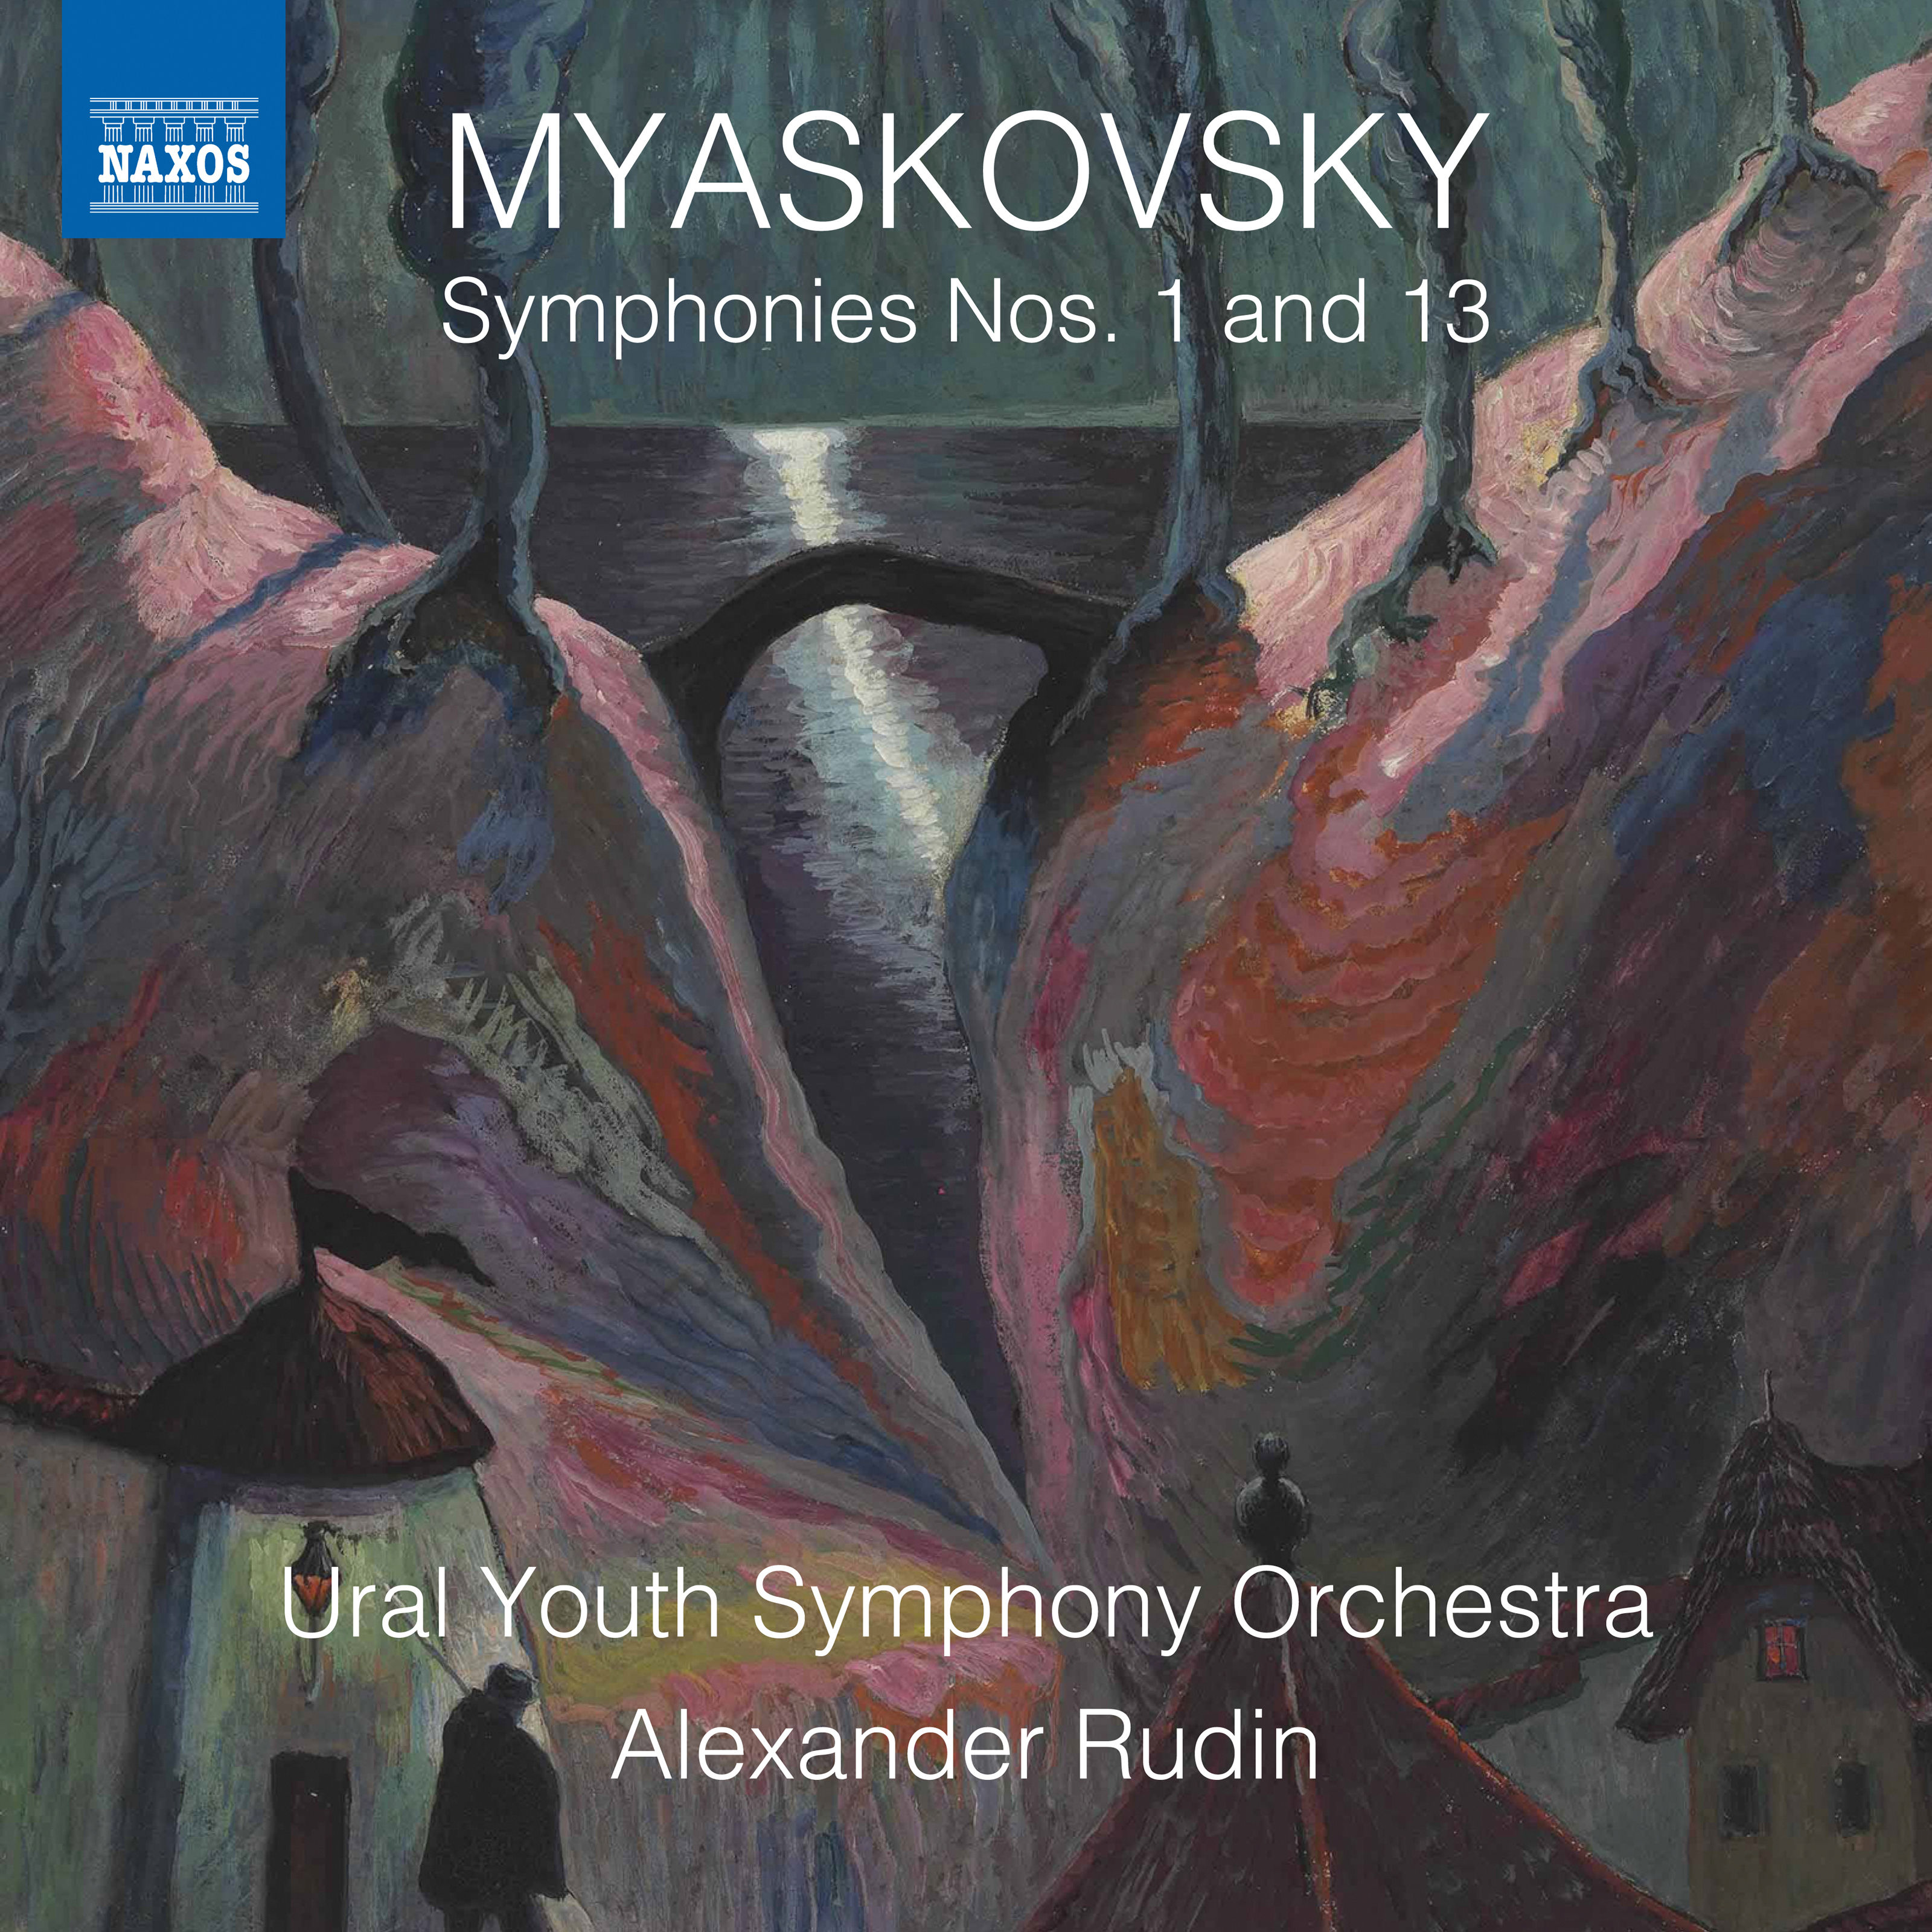 Ural Youth Symphony Orchestra, Alexander Rudin – Myaskovsky: Symphonies Nos. 1 & 13 (2019) [FLAC 24bit/96kHz]